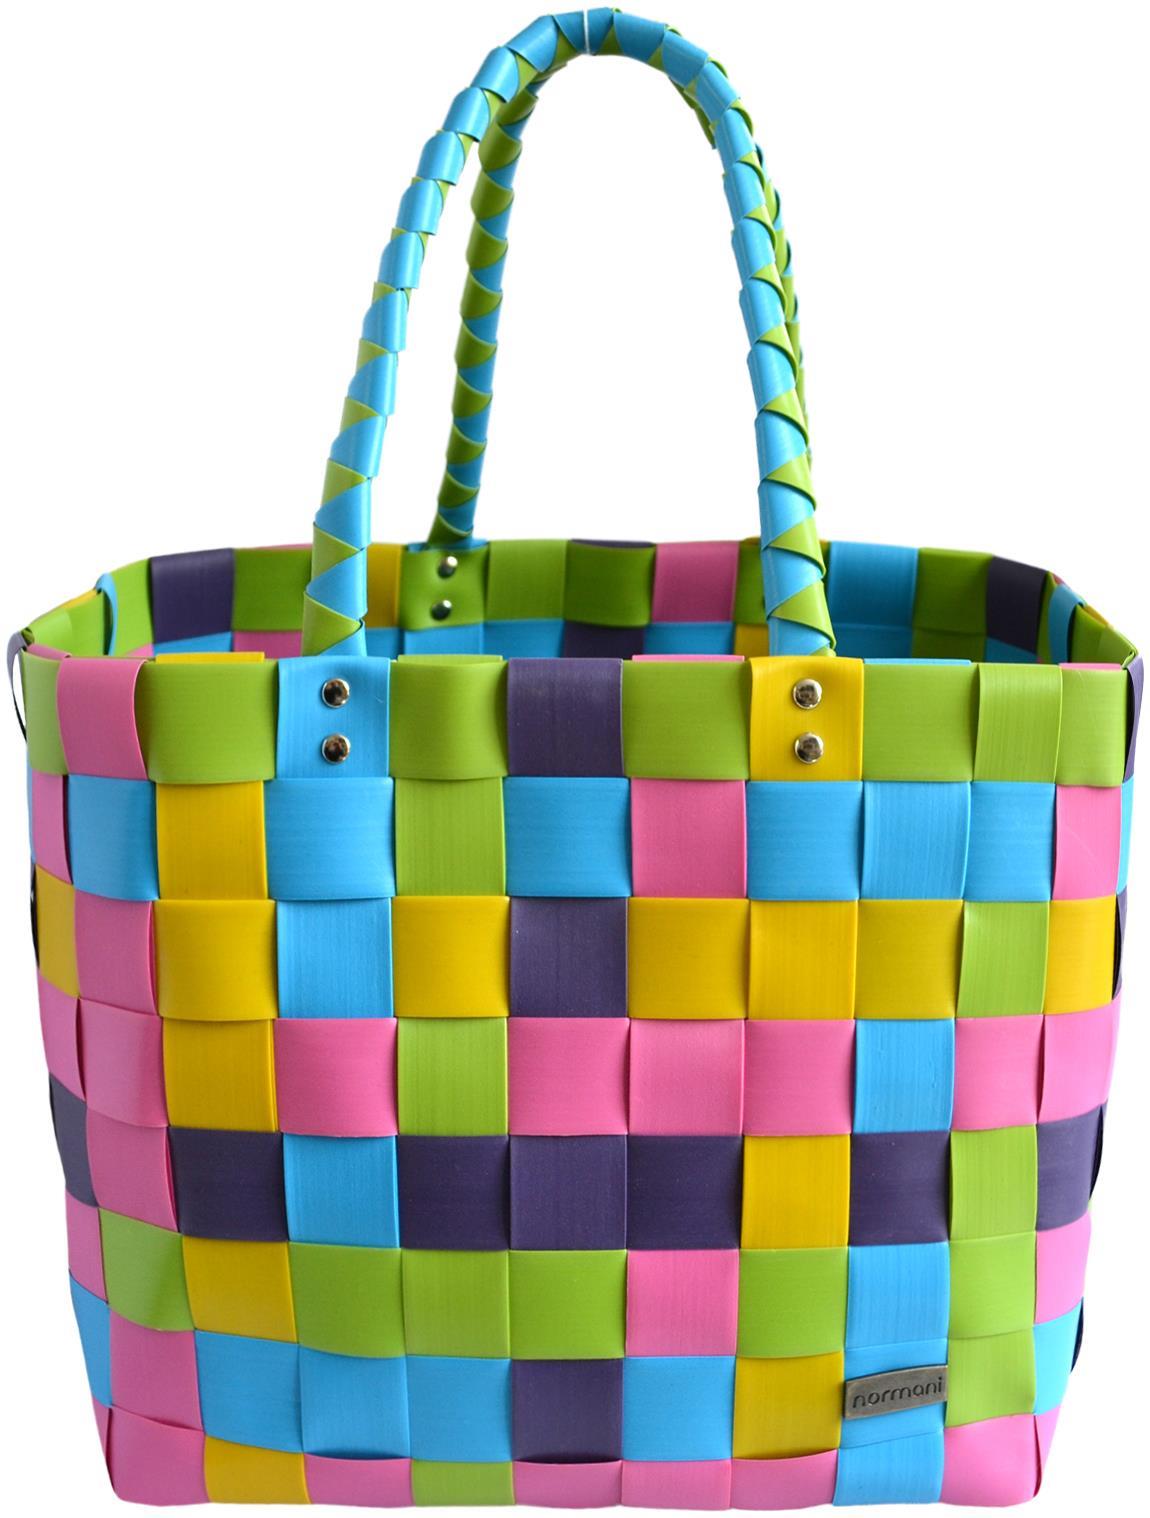 Сумка шоппер normani Einkaufskorb Einkaufstasche aus Kunststoff, цвет Lolly Pop